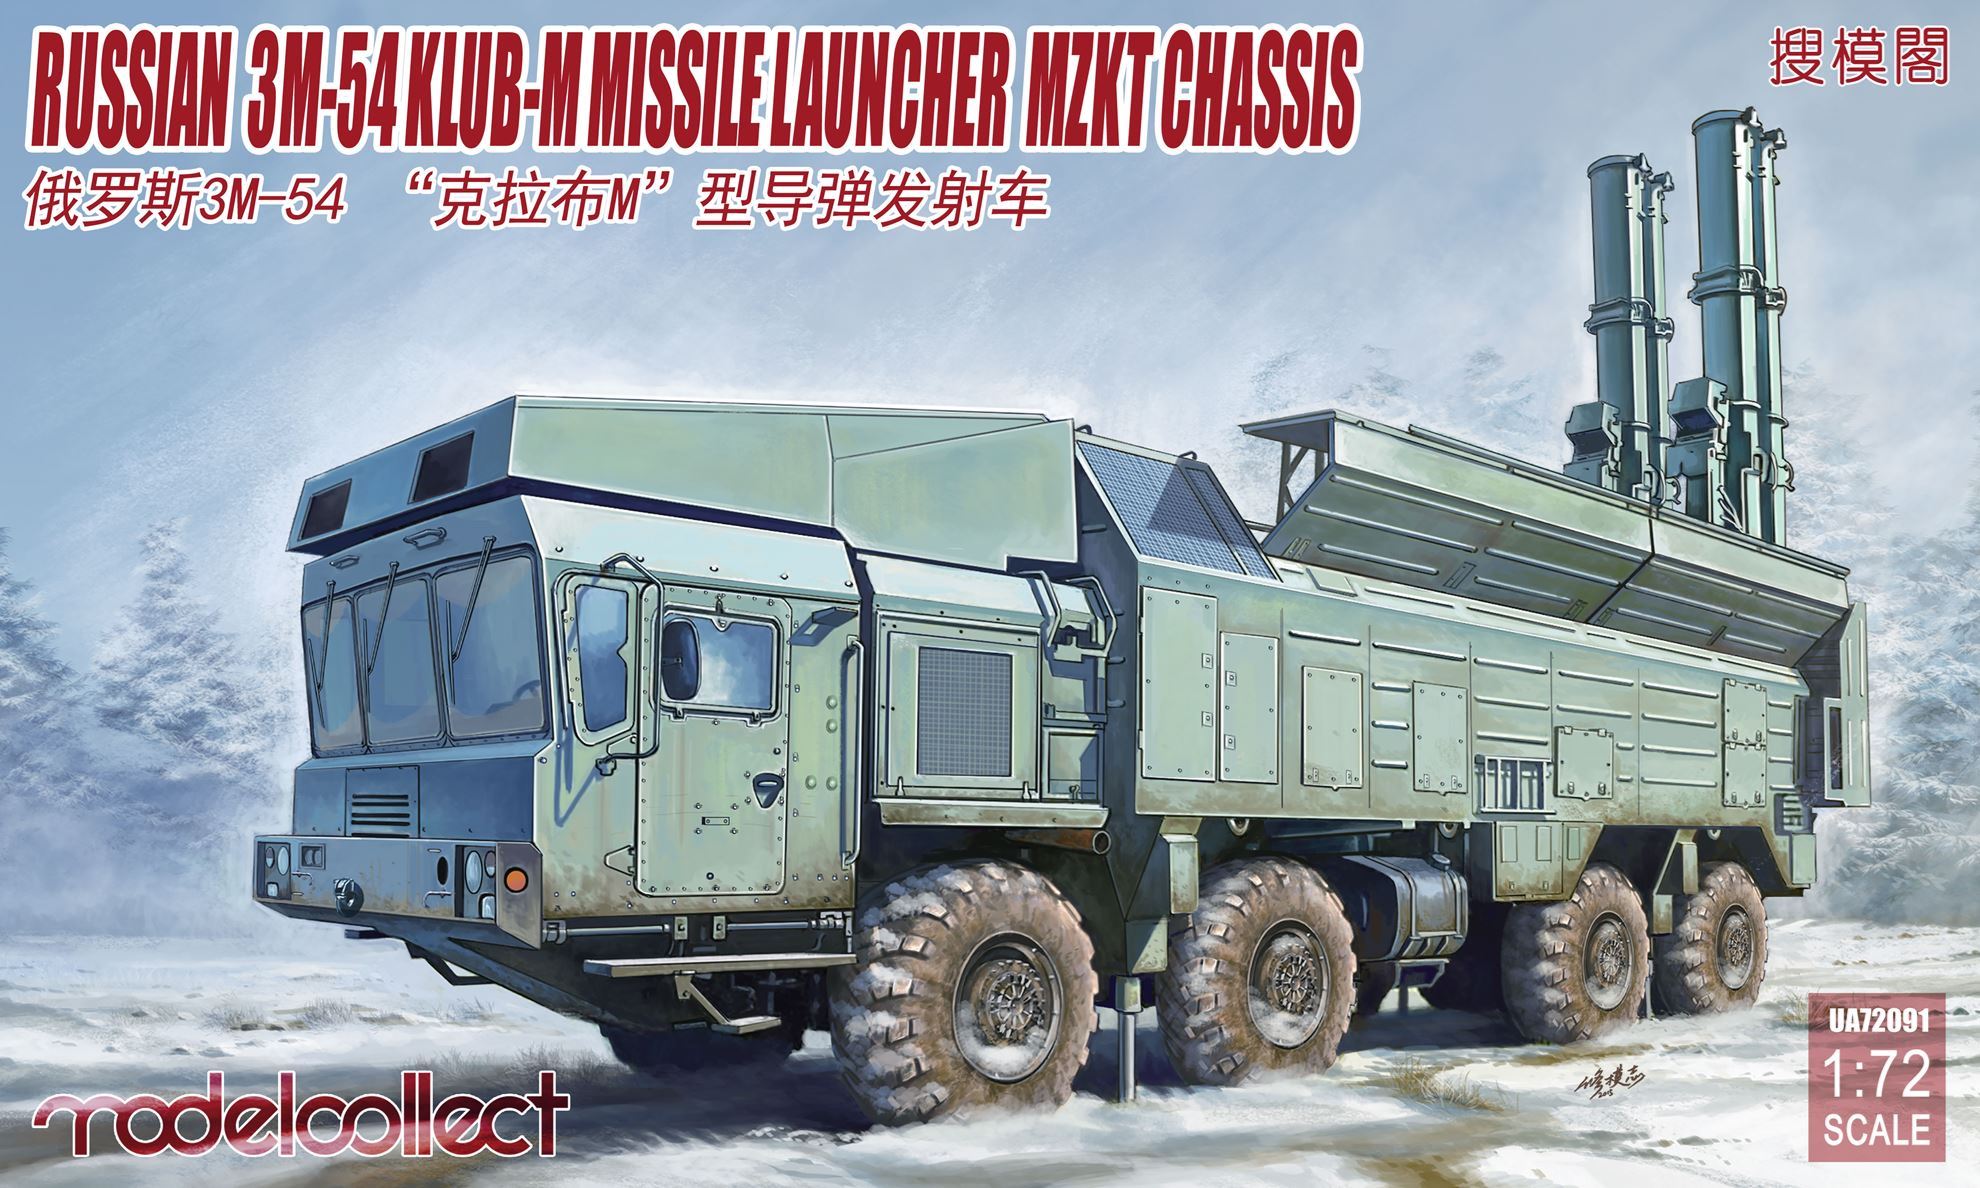 UA72091  техника и вооружение  САУ  Russian 3M-54  CLUB-M Missile Launcher Mzkt chassis   (1:72)